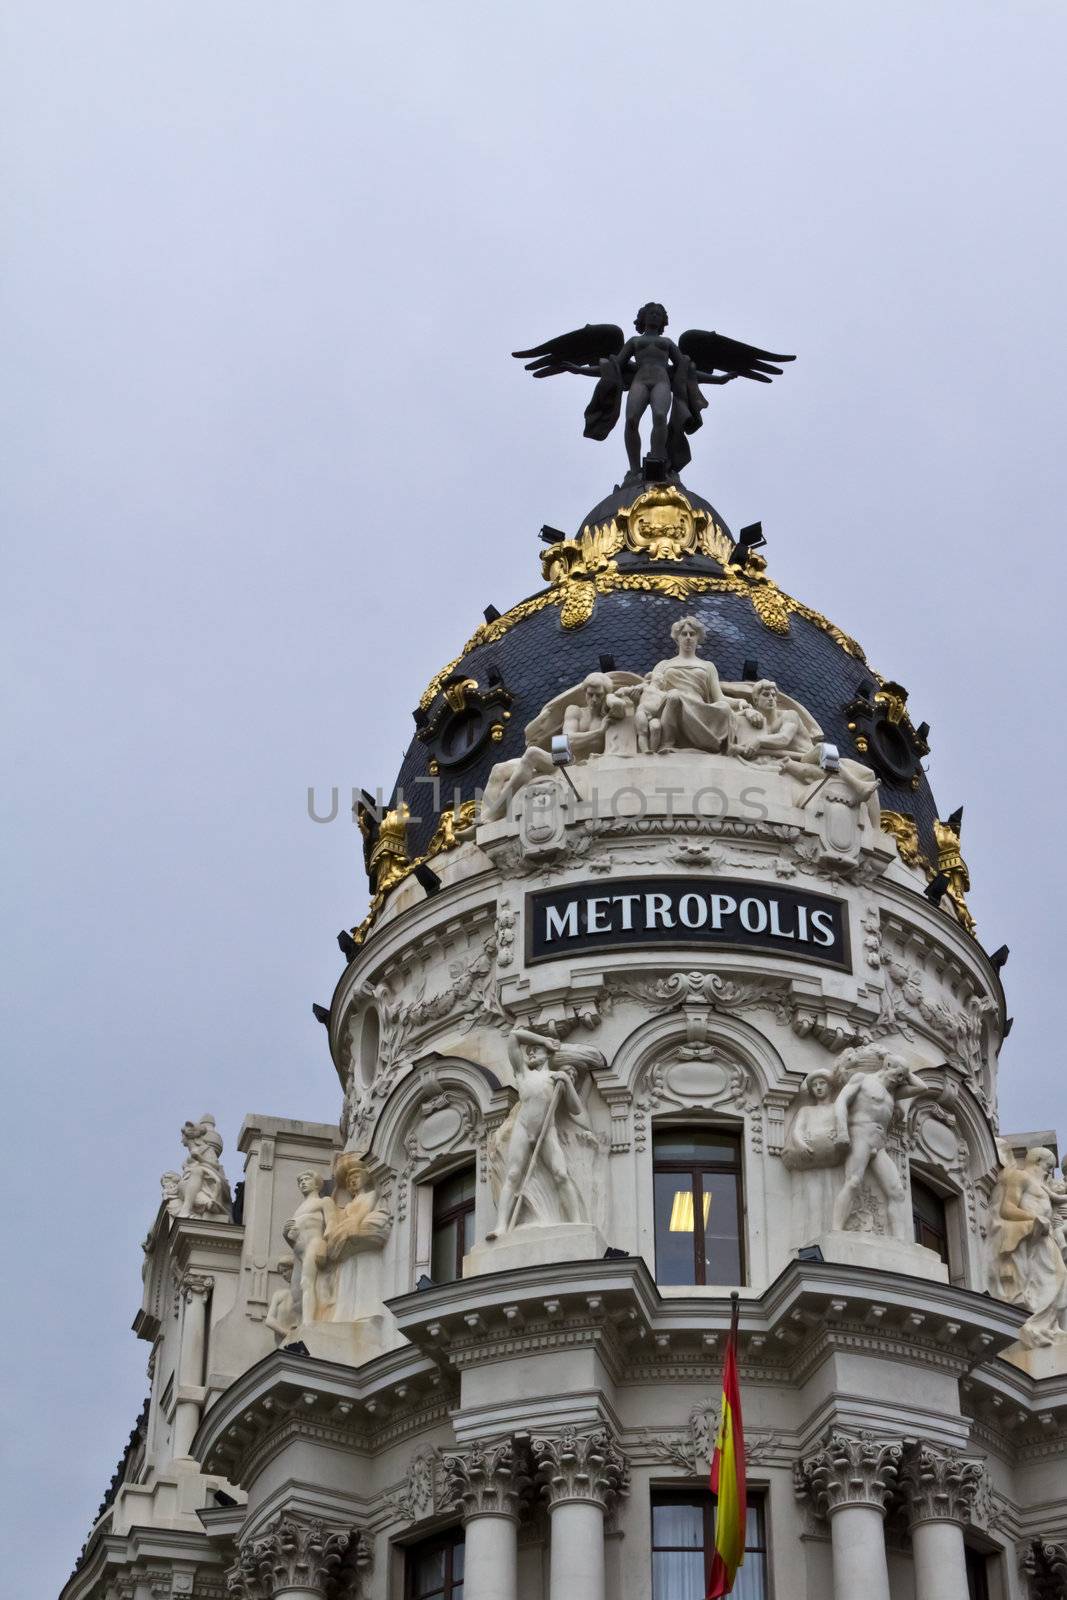 Metropolis building in Madrid by kyrien